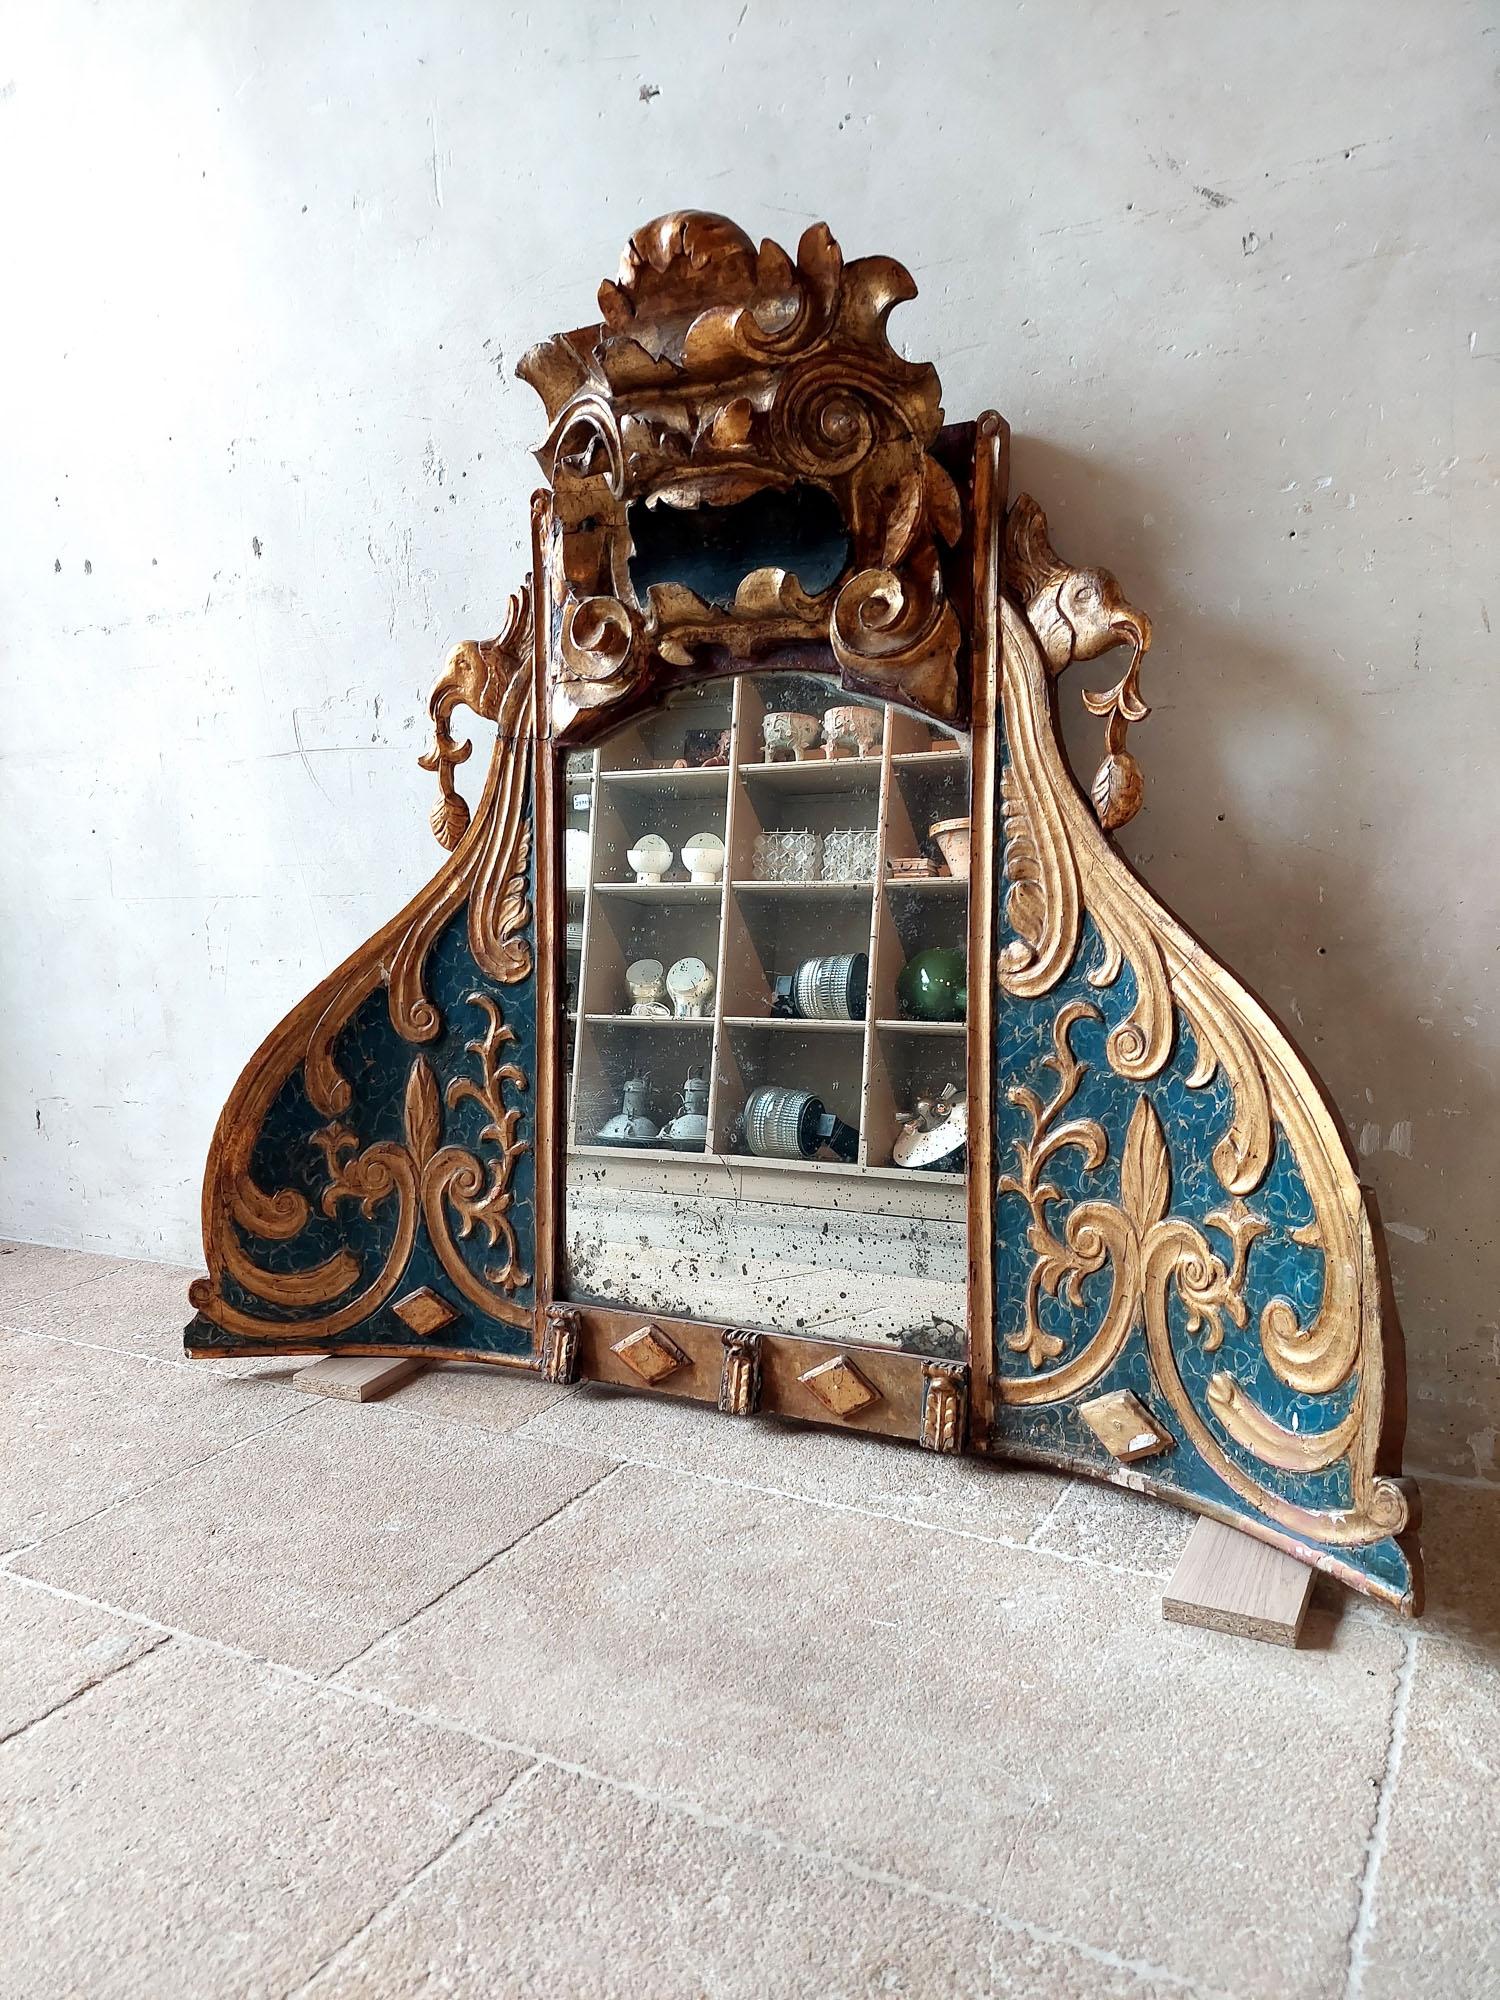 Ce miroir unique et spécial est fabriqué à partir d'une niche d'église italienne du XVIIIe siècle. Le cadre en bois sculpté a une forme légèrement concave et présente des décorations gracieuses telles que des boucles en forme de C, des formes de